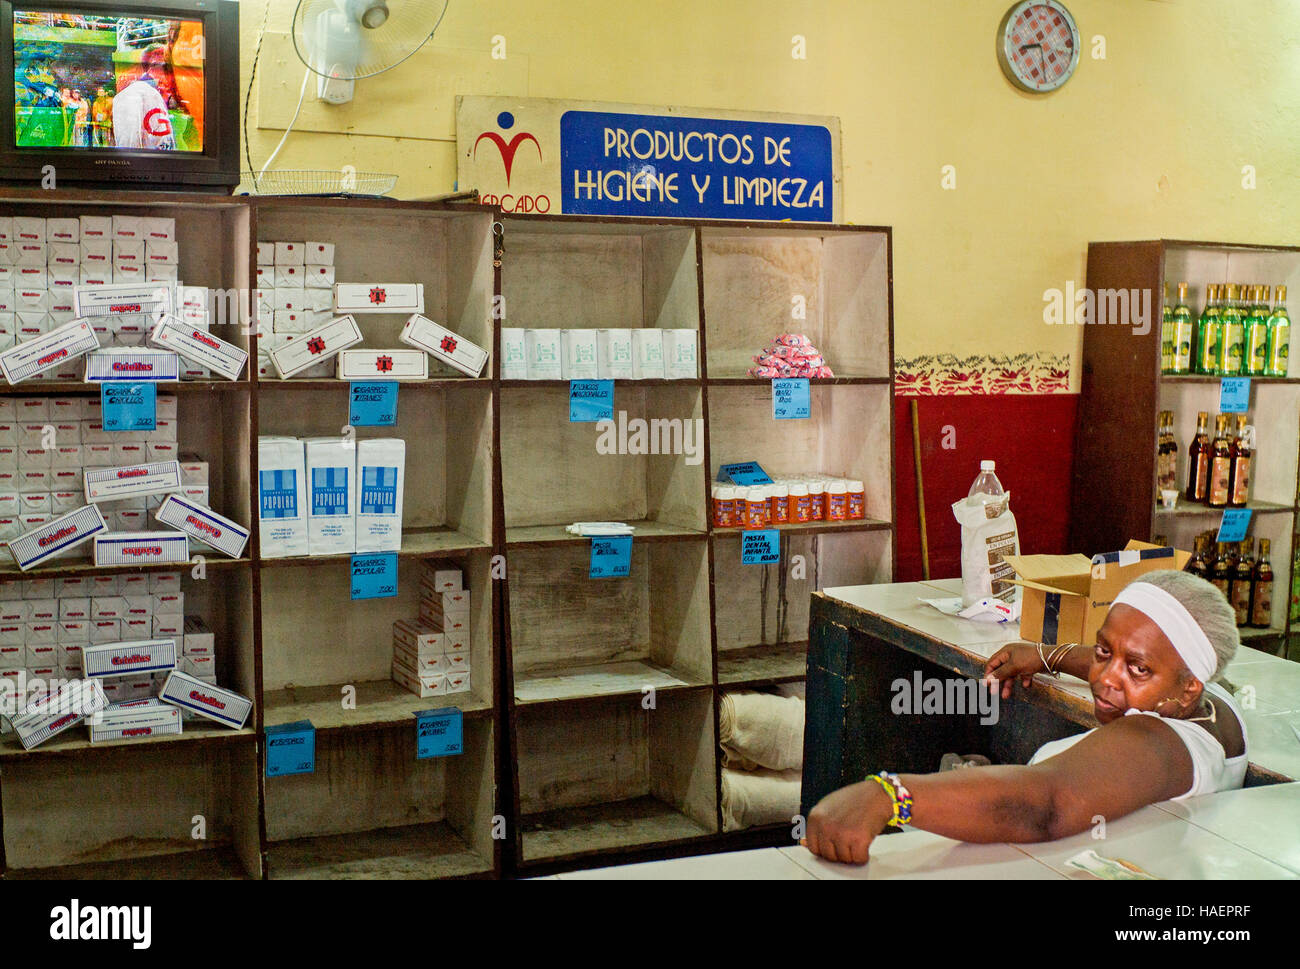 La Habana, Cuba,tienda de alimentos del gobierno,mujer dependienta viendo televisión 'productos de higiene y limpieza" Foto de stock